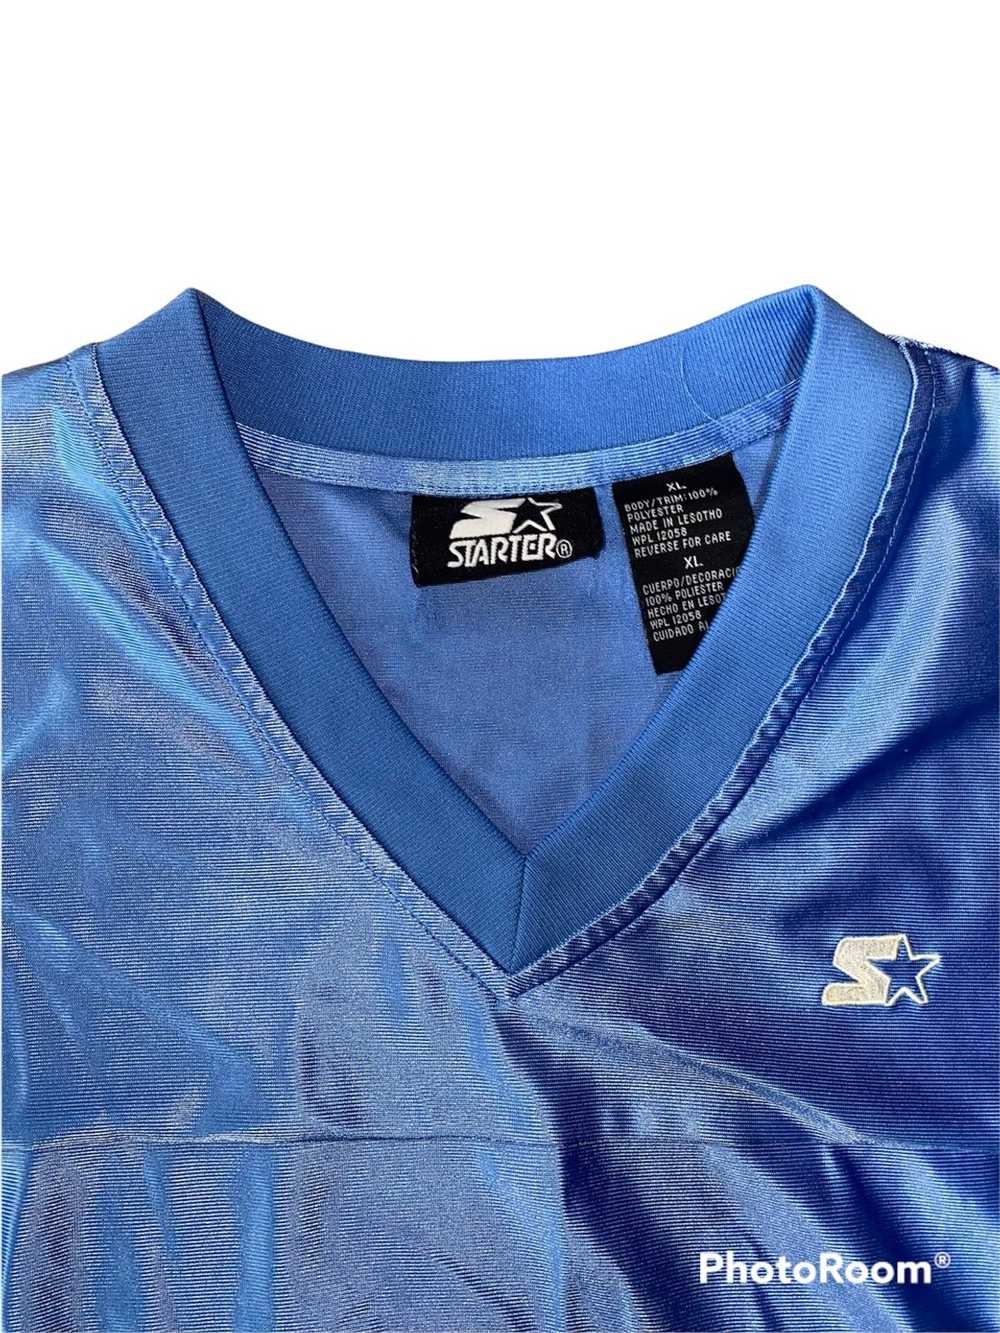 Starter Vintage Silk Starter Jersey - image 2